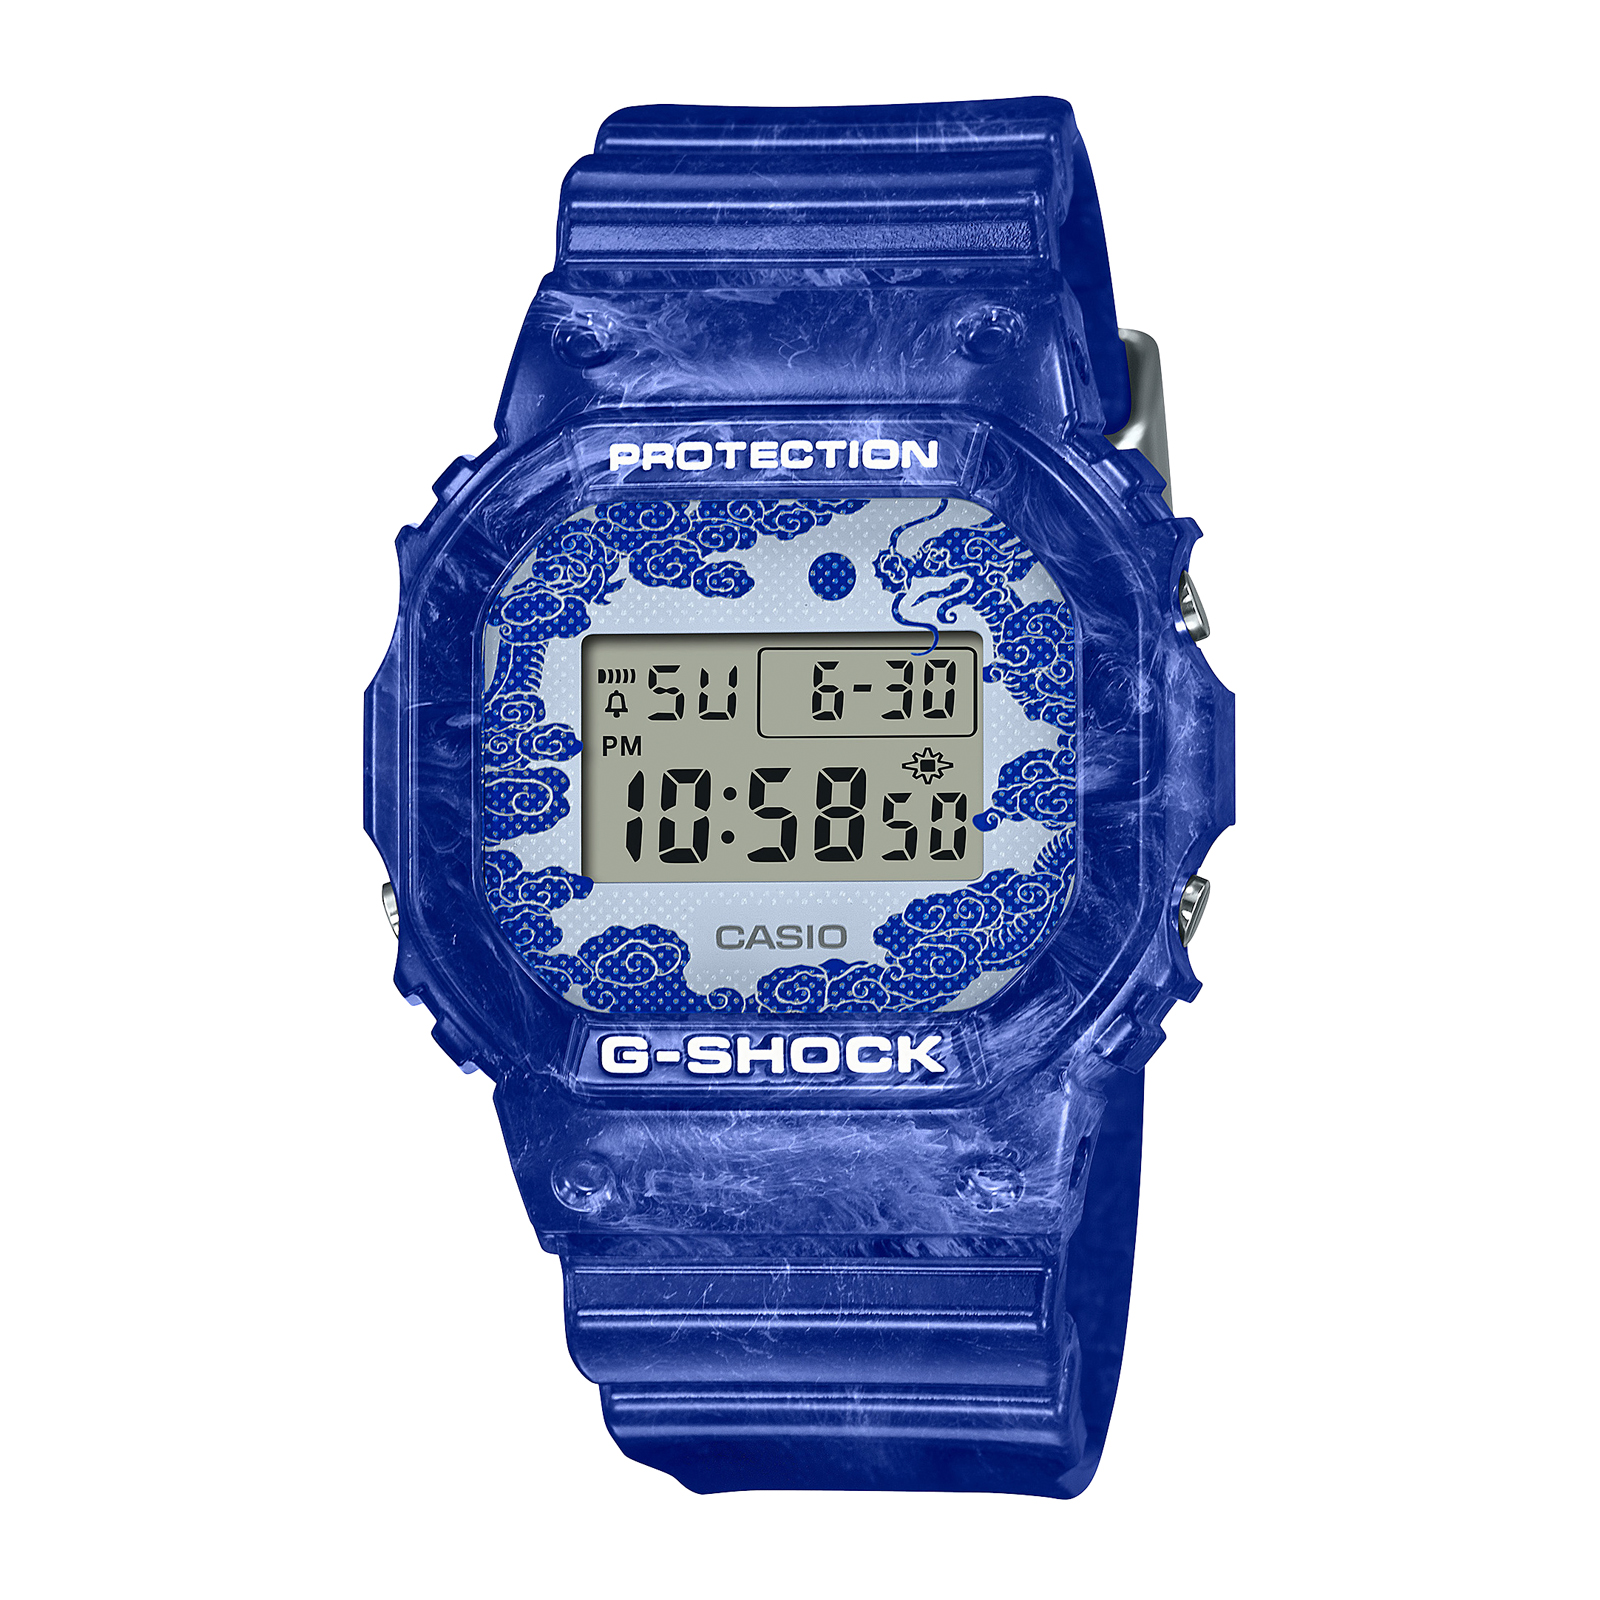 Reloj G-SHOCK DW-5600HR-1D Resina Hombre Negro - Btime